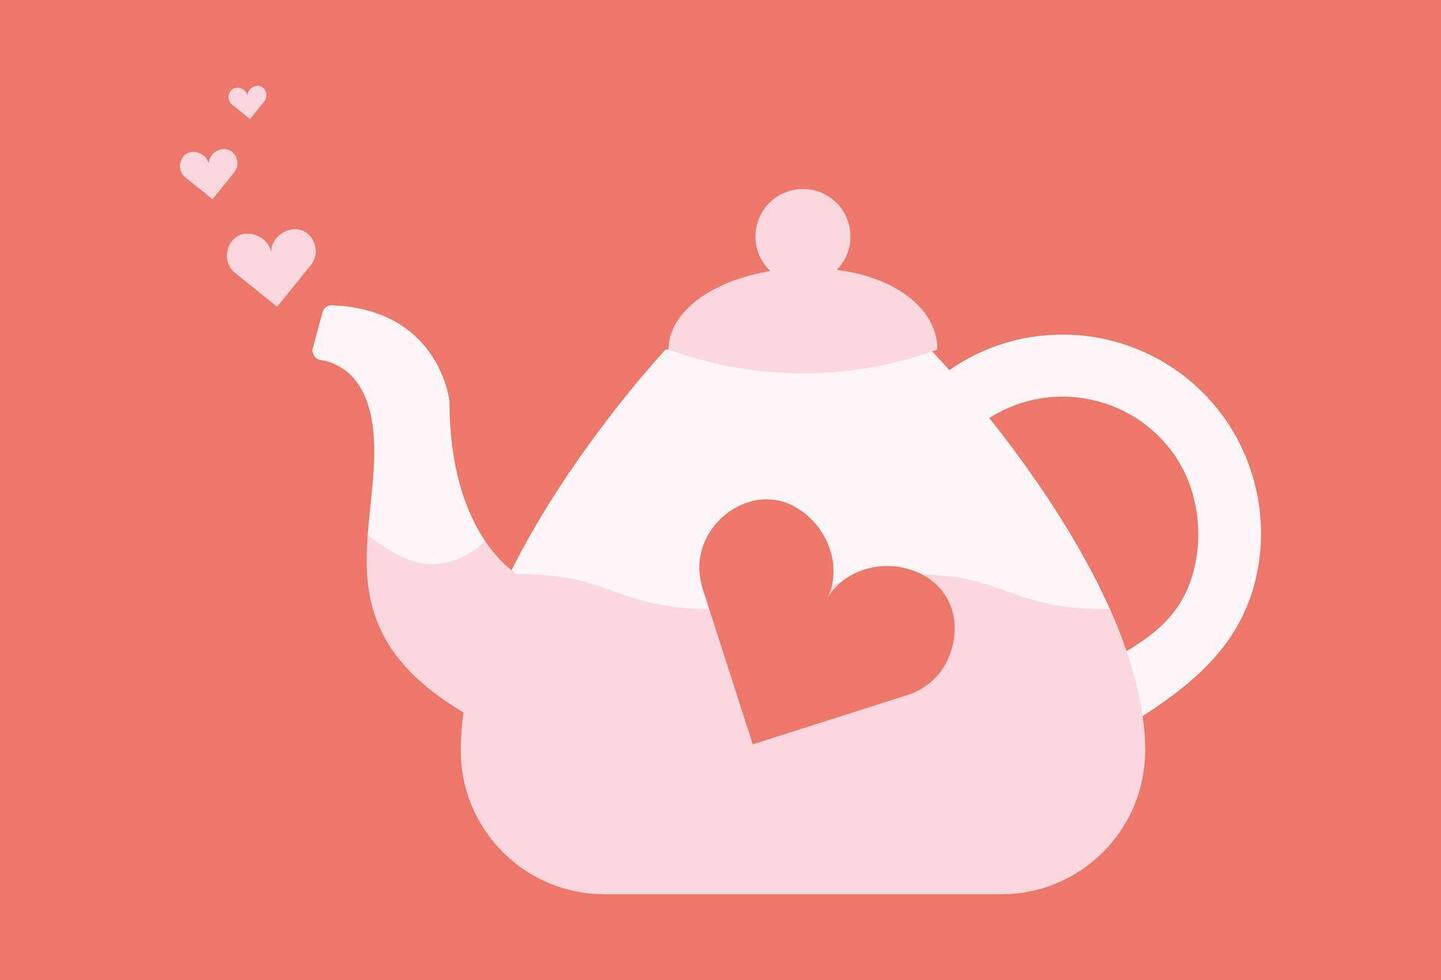 theepot met hart vorm geven aan. thee gemaakt met liefde. ketel. heet drankje. keuken gebruiksvoorwerpen. drinken pauze. vloeistof. geïsoleerd voorwerp. Valentijn dag. kleur beeld - roze, rood. vlak stijl. illustratie. vector